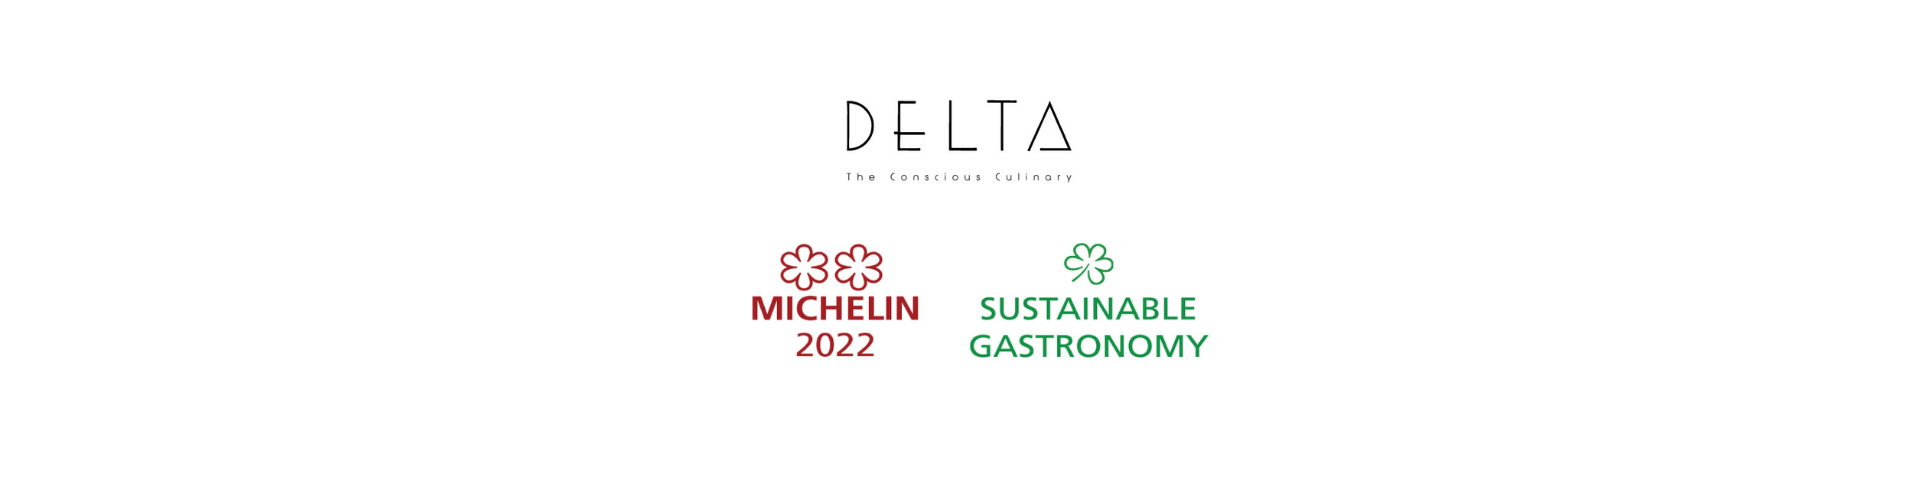 Εικαστικό με τυπογραφία με τα λογότυπα του Delta Restaurant και τα αστέρια Mchelin